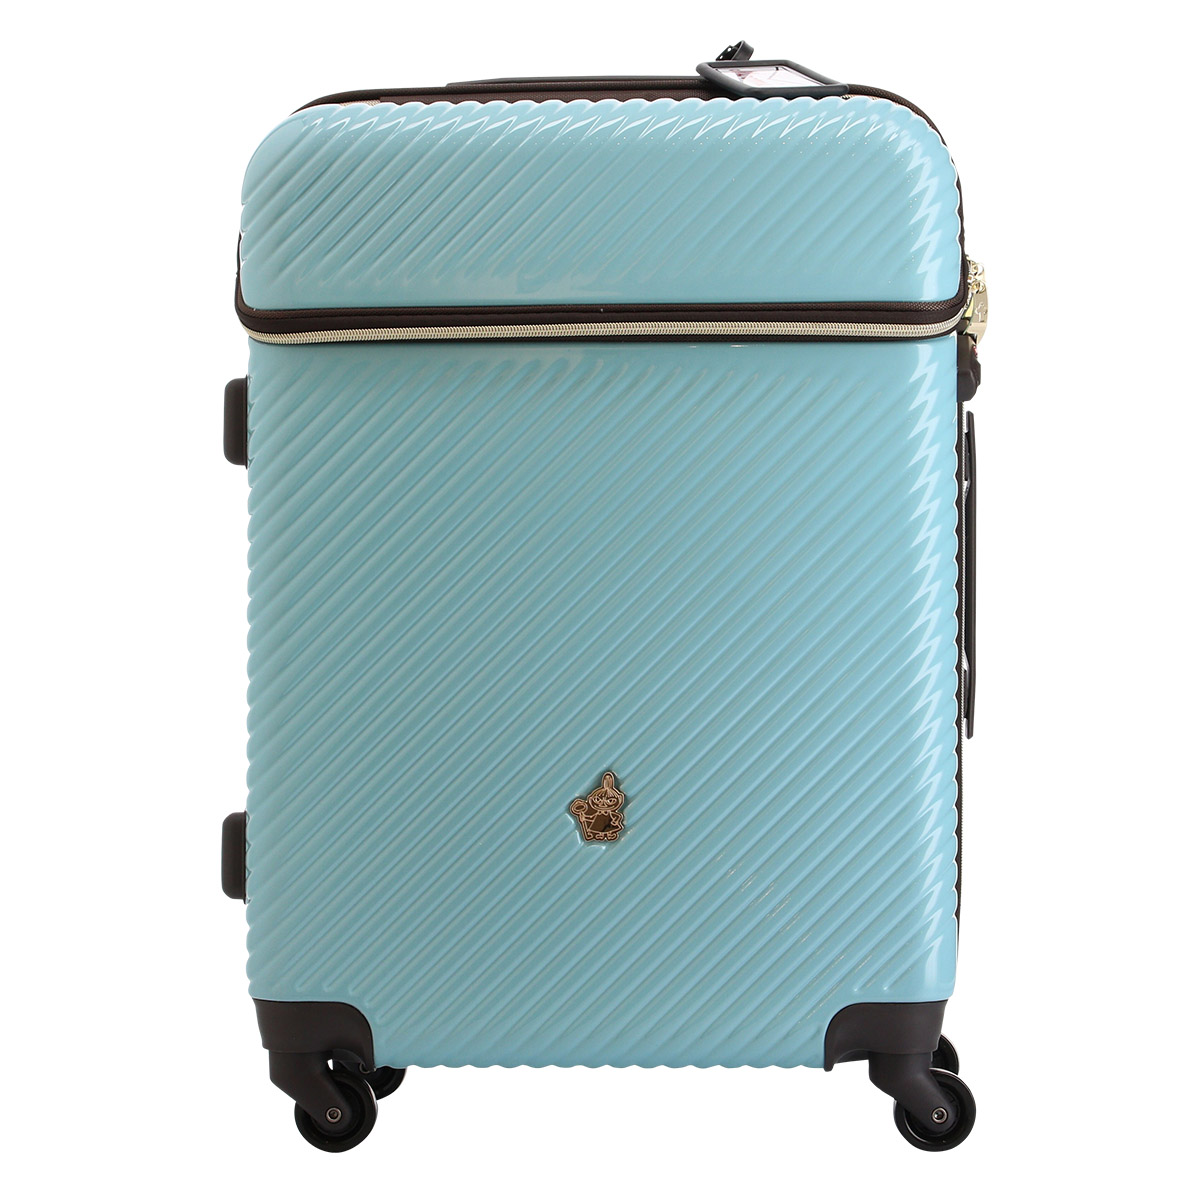 ムーミン スーツケース 当社限定 かわいい 49L 63cm 3.8kg MM2-018 